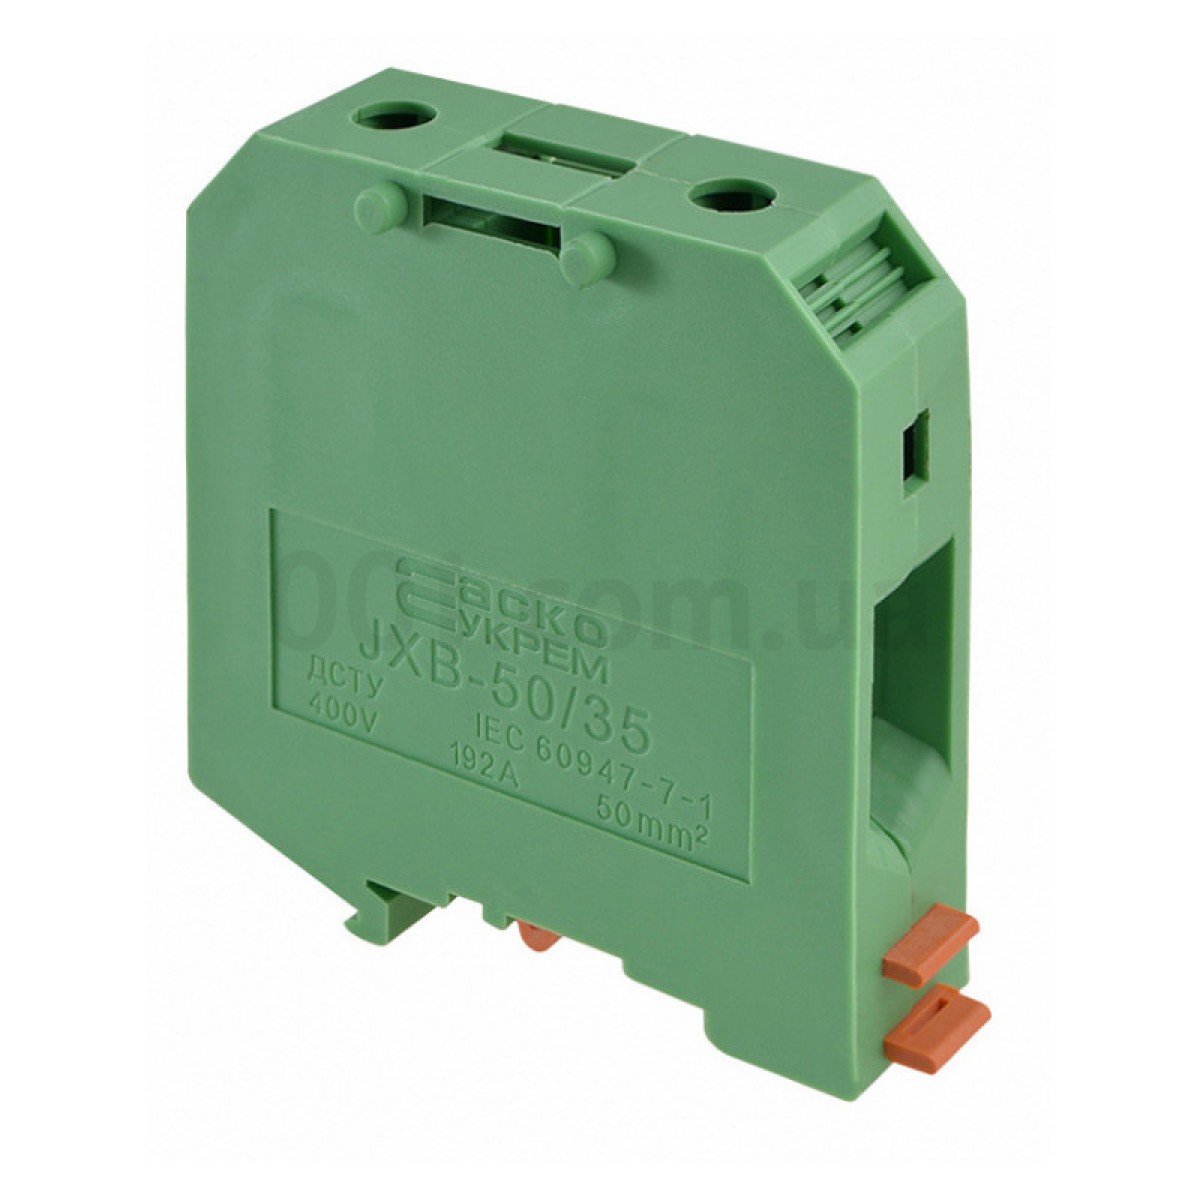 Гвинтовий контактний затискач JXB 50/35 на DIN-рейку зелений, АСКО-УКРЕМ 256_256.jpg